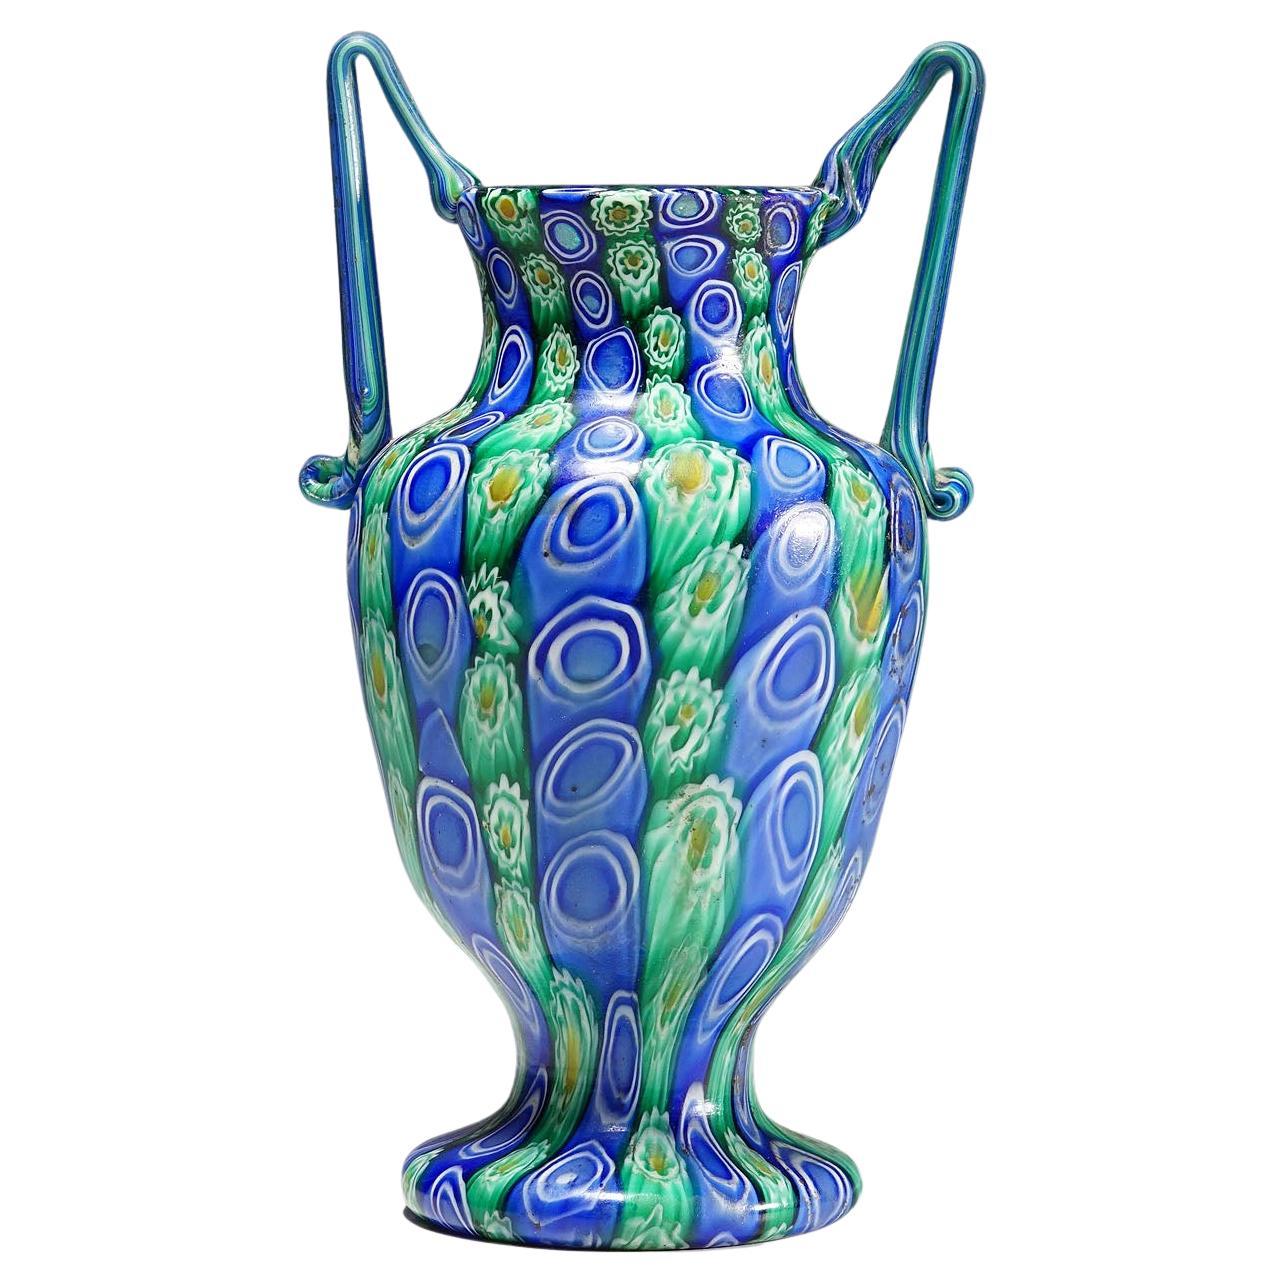 Grand vase antique Millefiori avec anses, Fratelli Toso Murano vers 1910